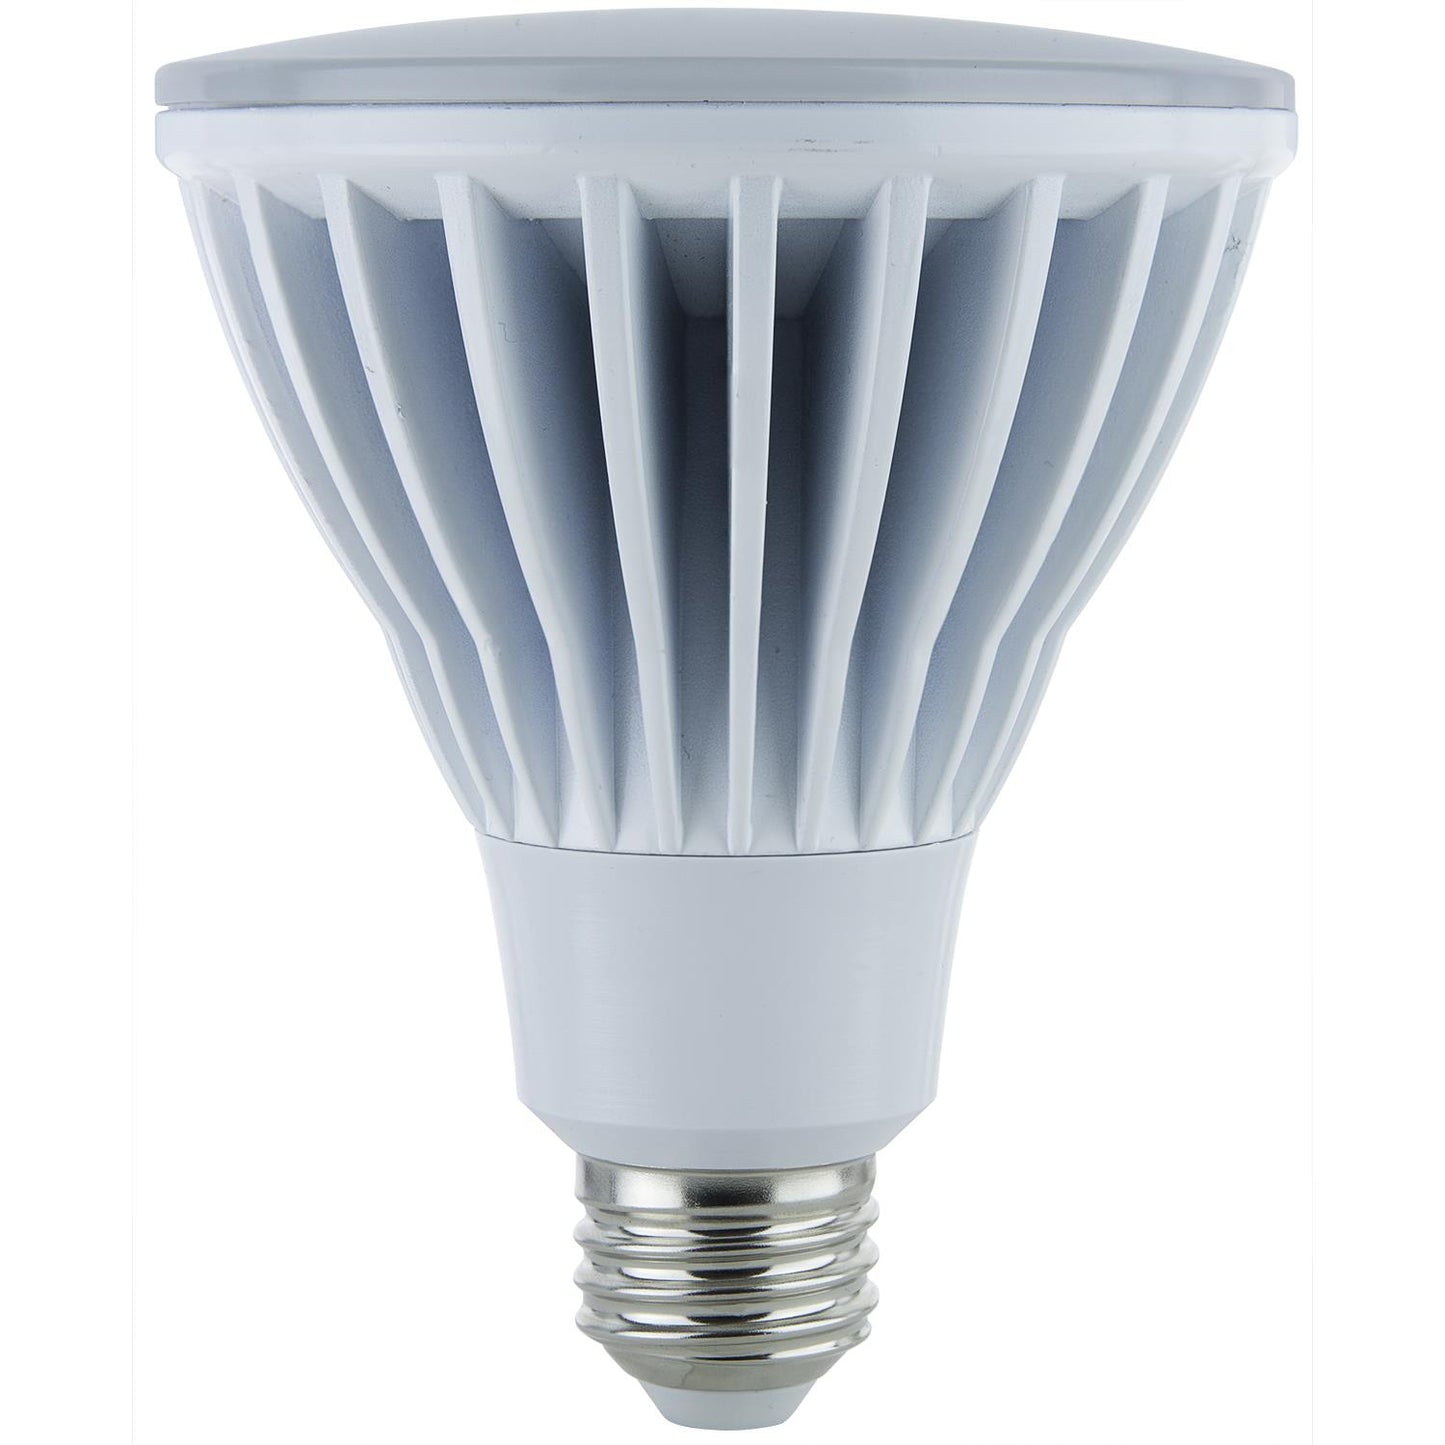 Sunlite PAR30 High Lumen Reflector, 1000 Lumens, Medium Base Light Bulb, White